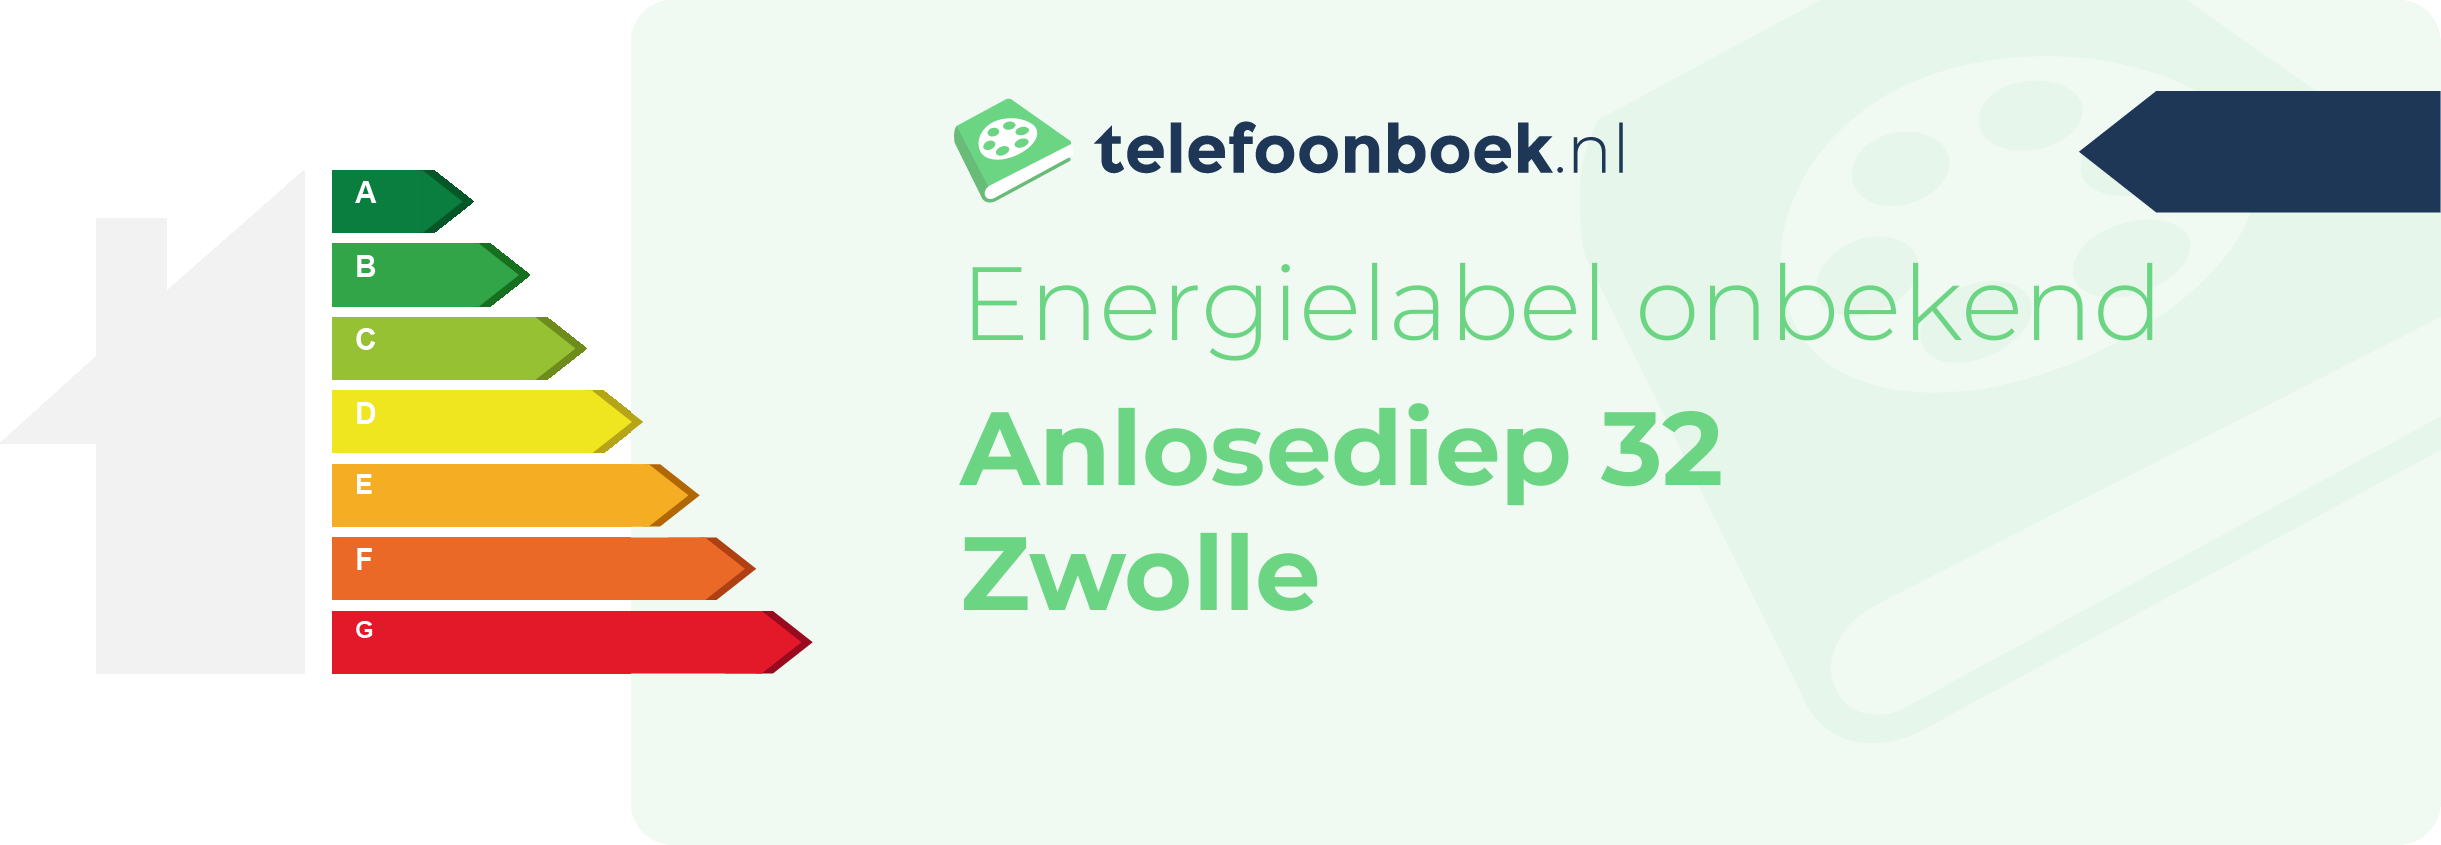 Energielabel Anlosediep 32 Zwolle